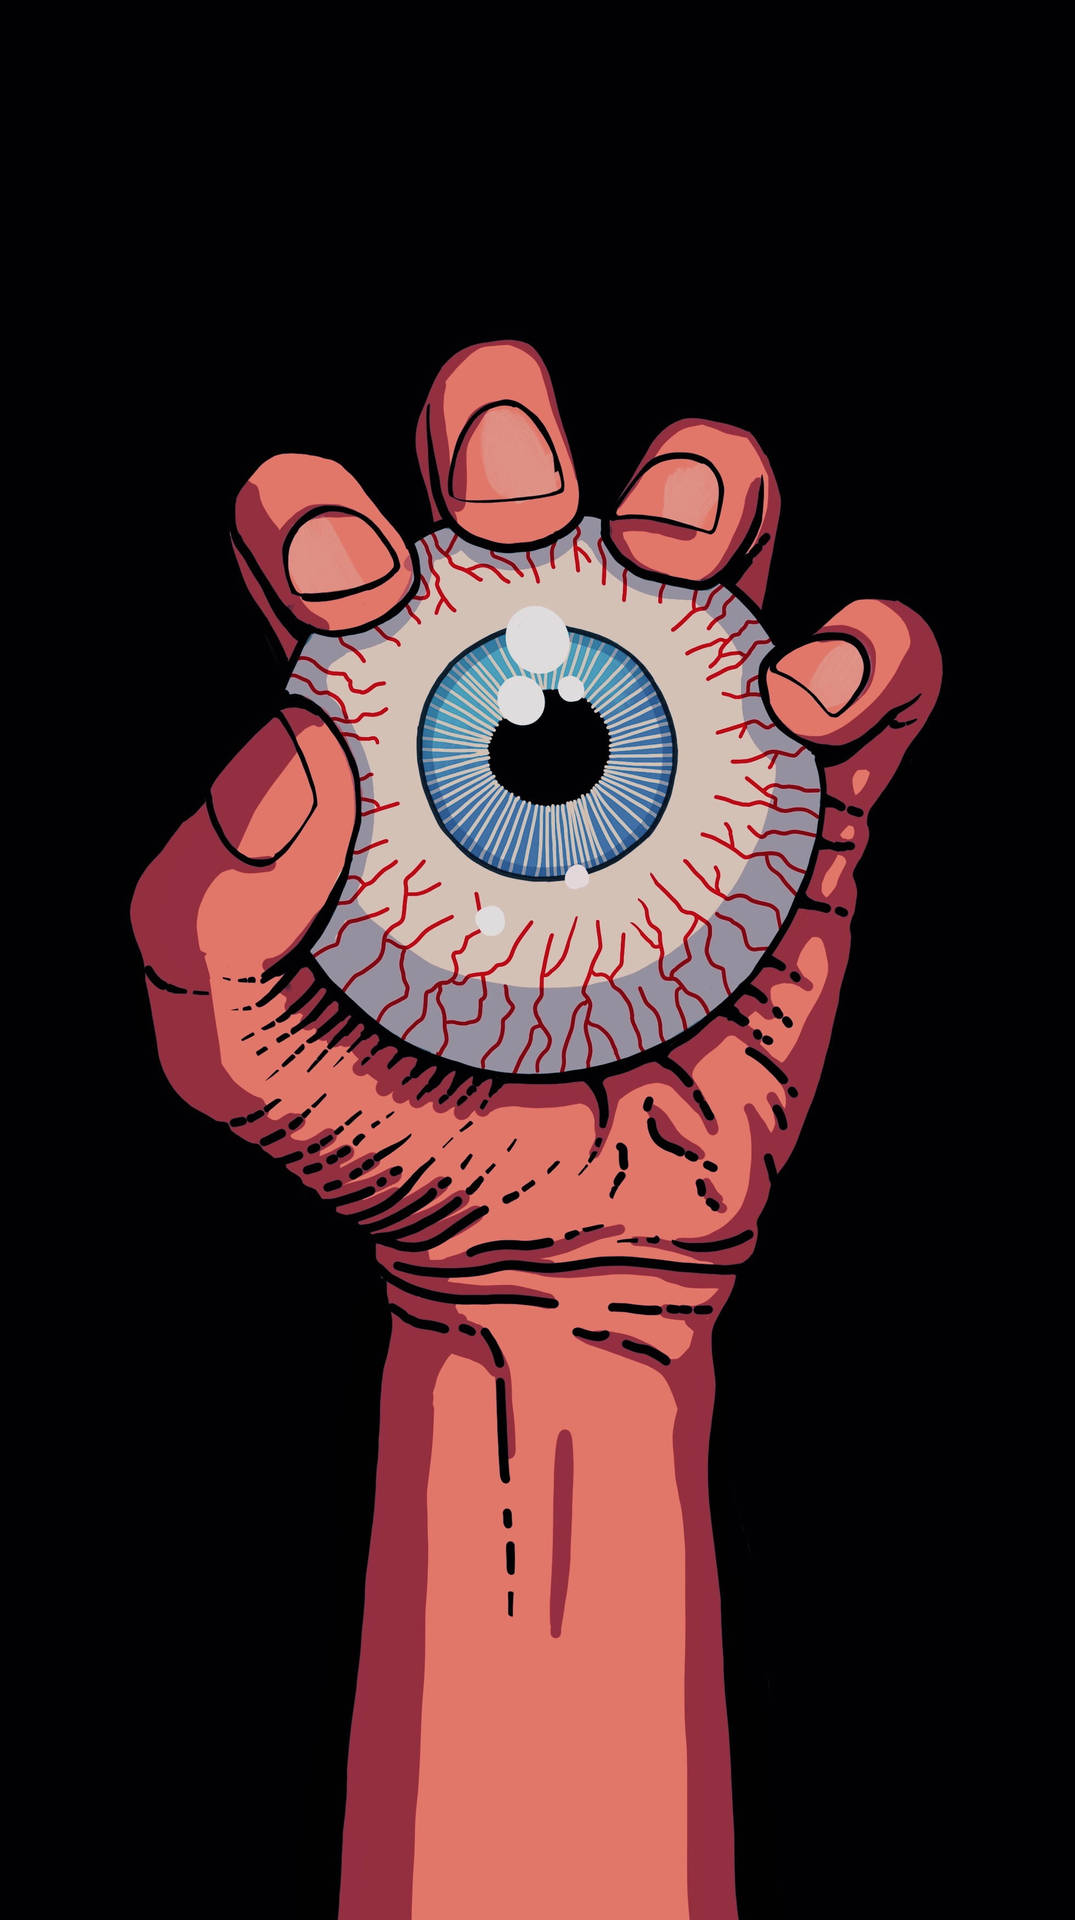 Sick Phone Hand And Eyeball